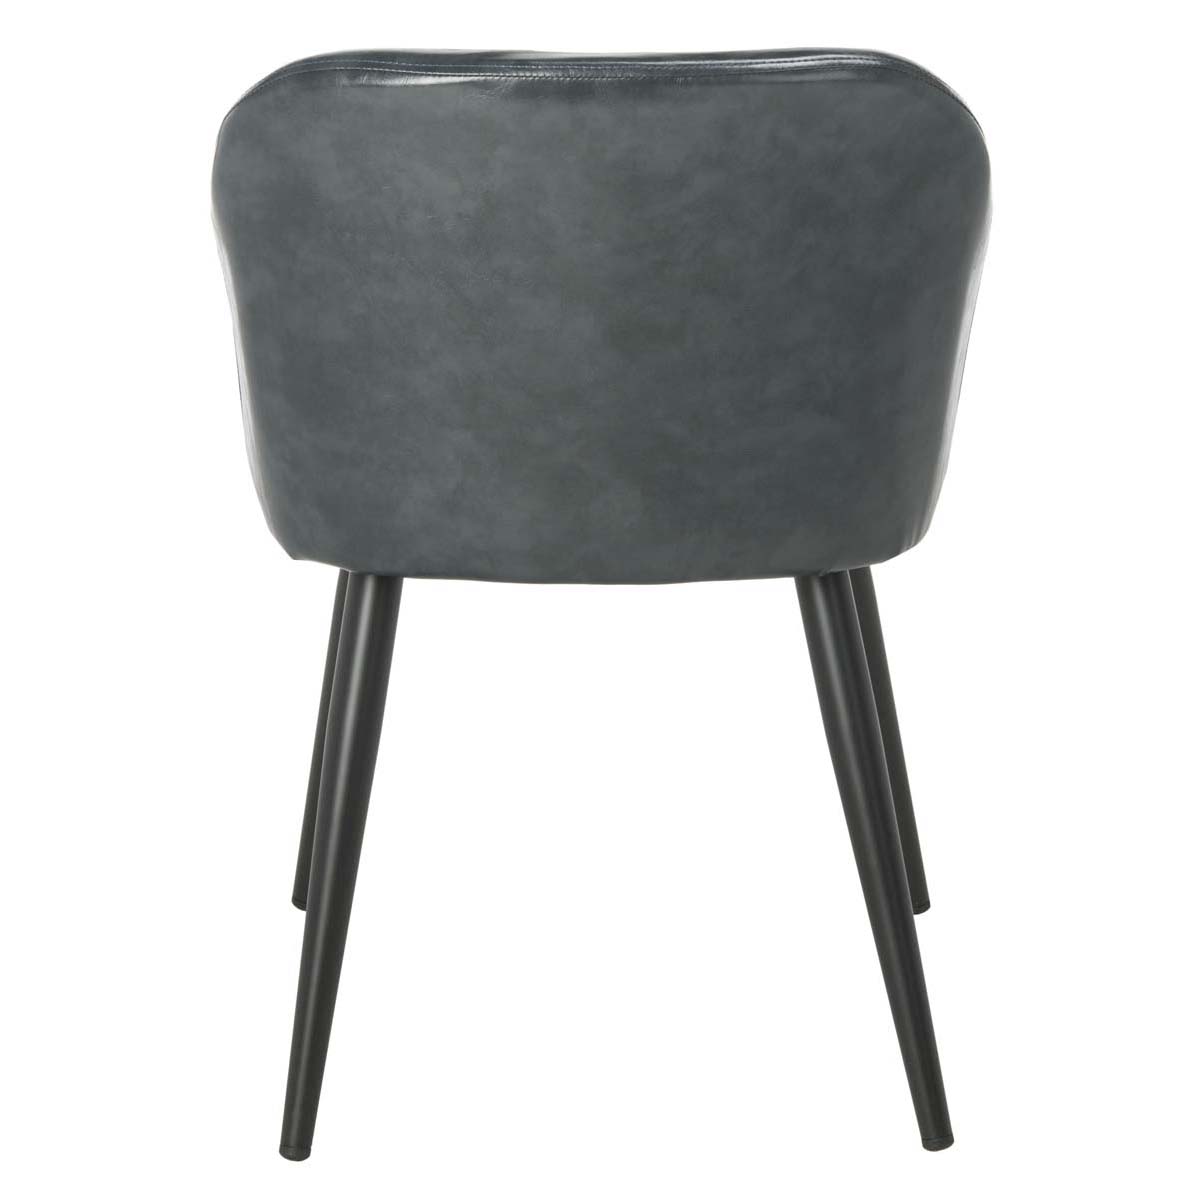 Safavieh Adalena Accent Chair , ACH7500 - Dark Grey Pu/Black Legs